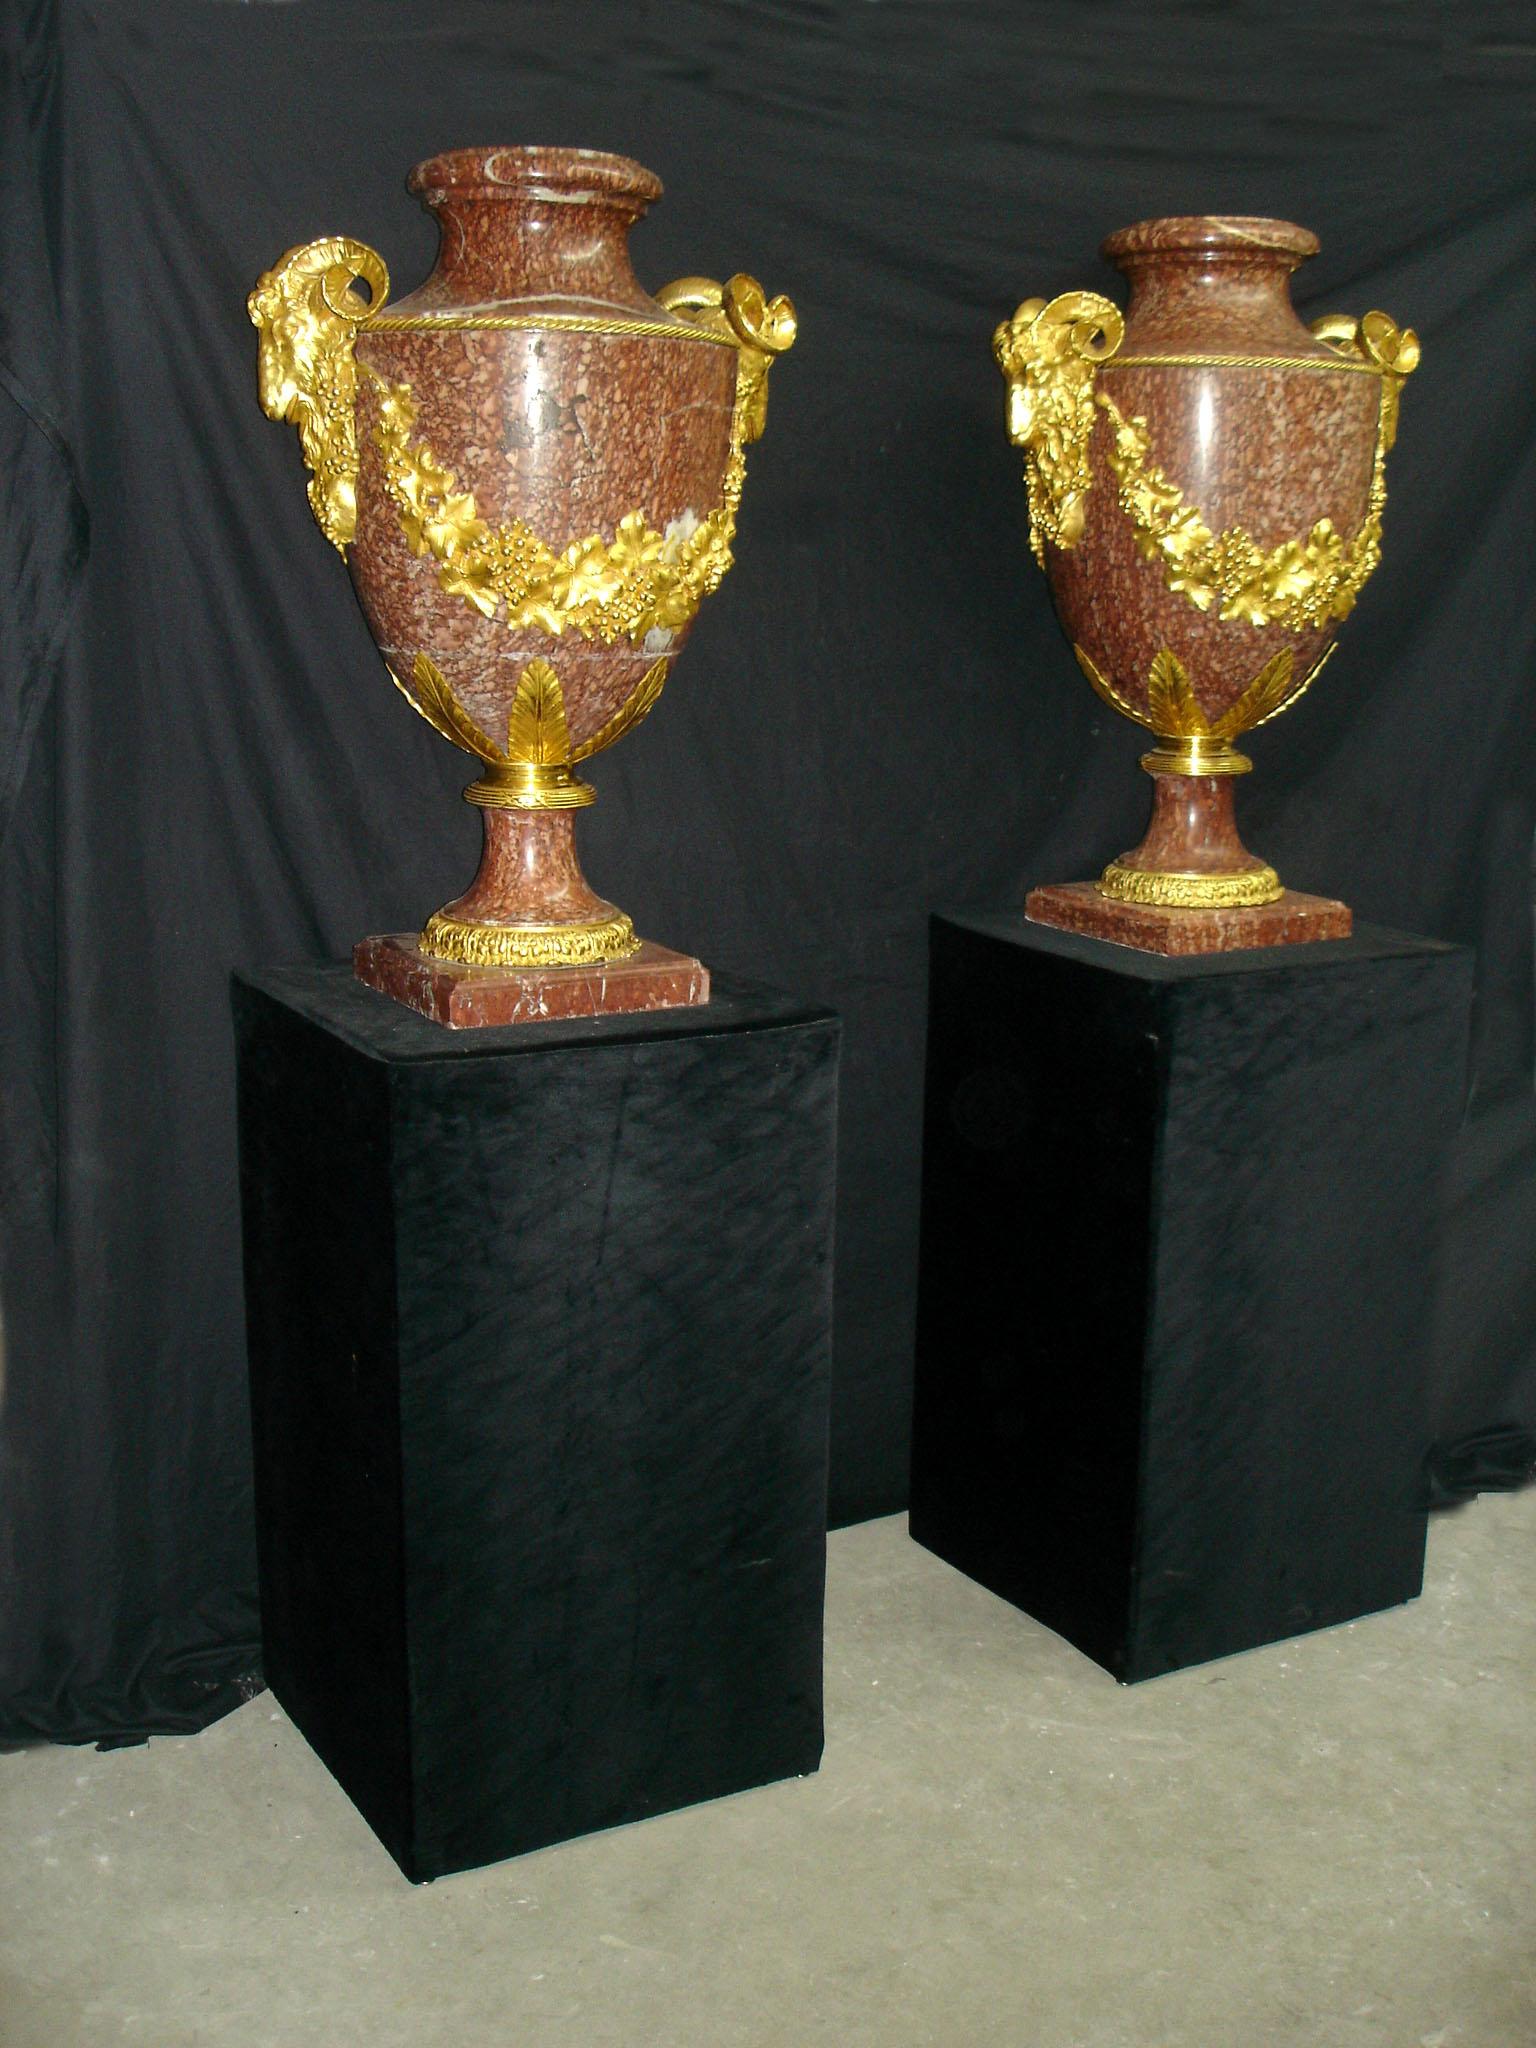 Une grande et impressionnante paire d'urnes en marbre rouge montées en bronze doré de la fin du XIXe siècle.

Chaque urne est montée de têtes de bélier en bronze reliées par des couronnes en bronze.